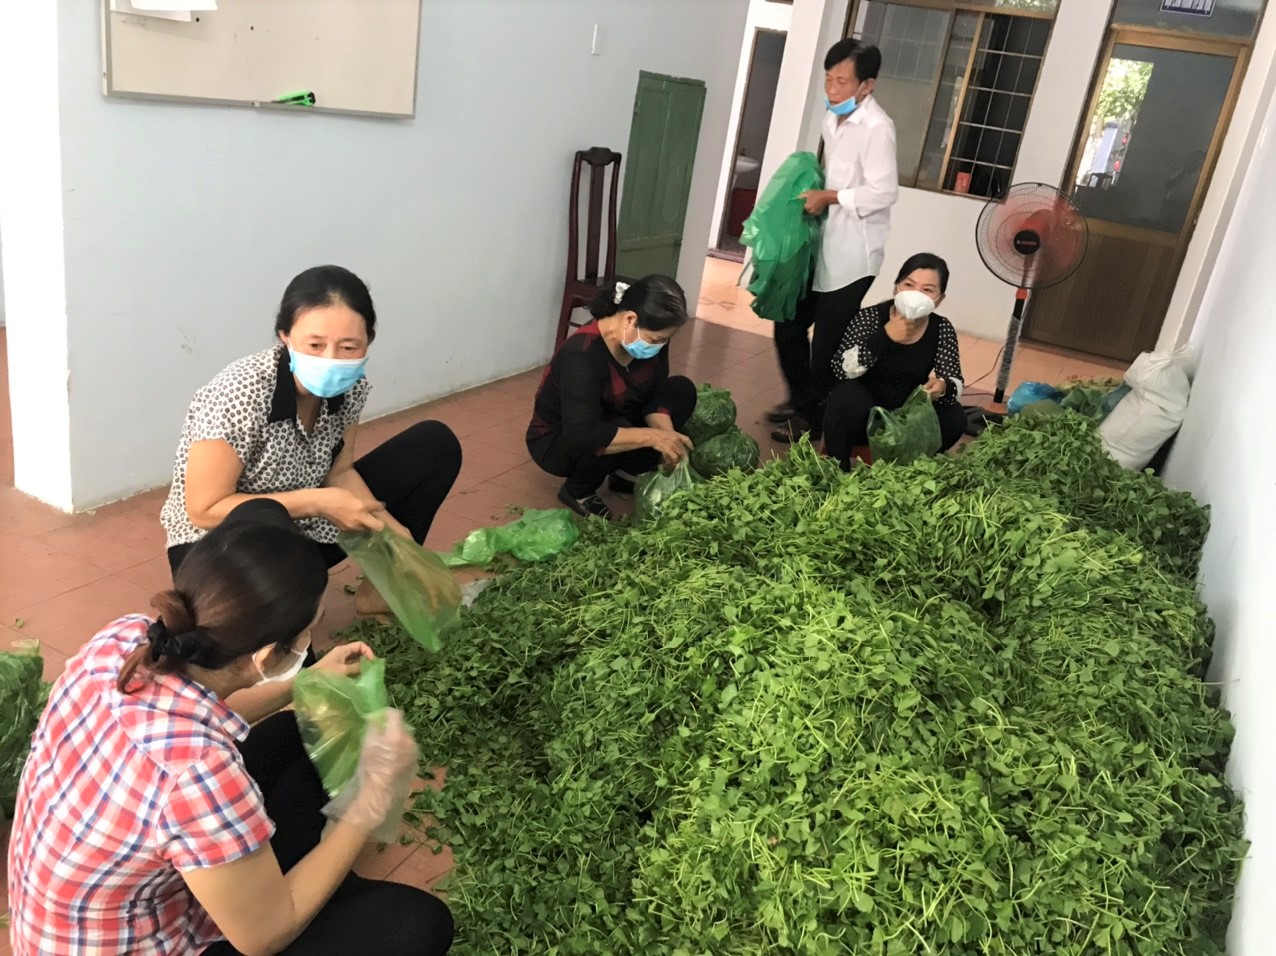 Cán bộ Hội Nông dân TP. Bà Rịa cùng các đoàn thể chuẩn bị rau xanh tặng cho các hộ trong khu cách ly.